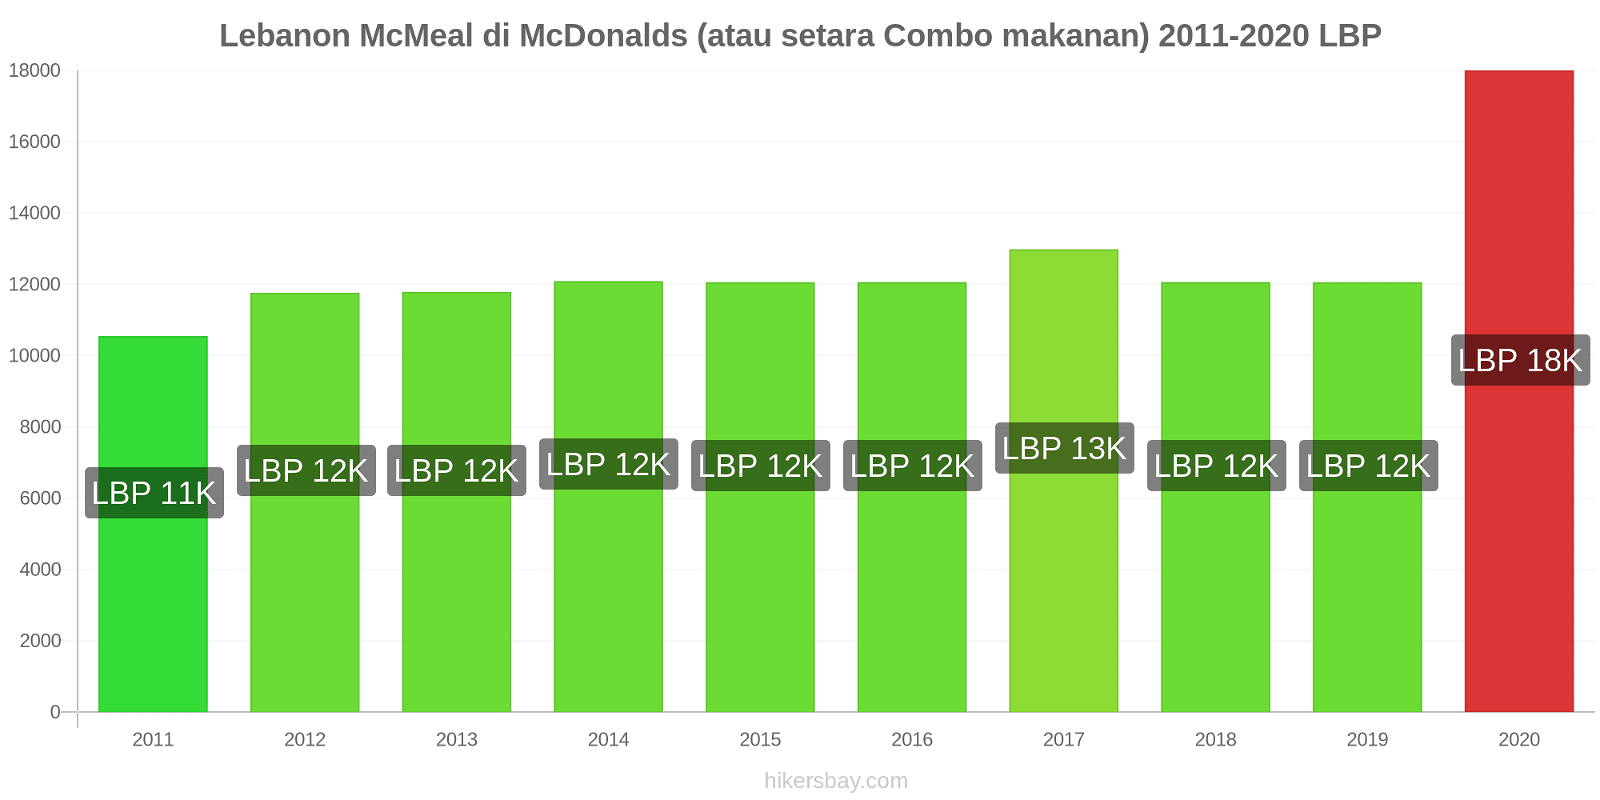 Lebanon perubahan harga McMeal di McDonalds (atau setara Combo makanan) hikersbay.com